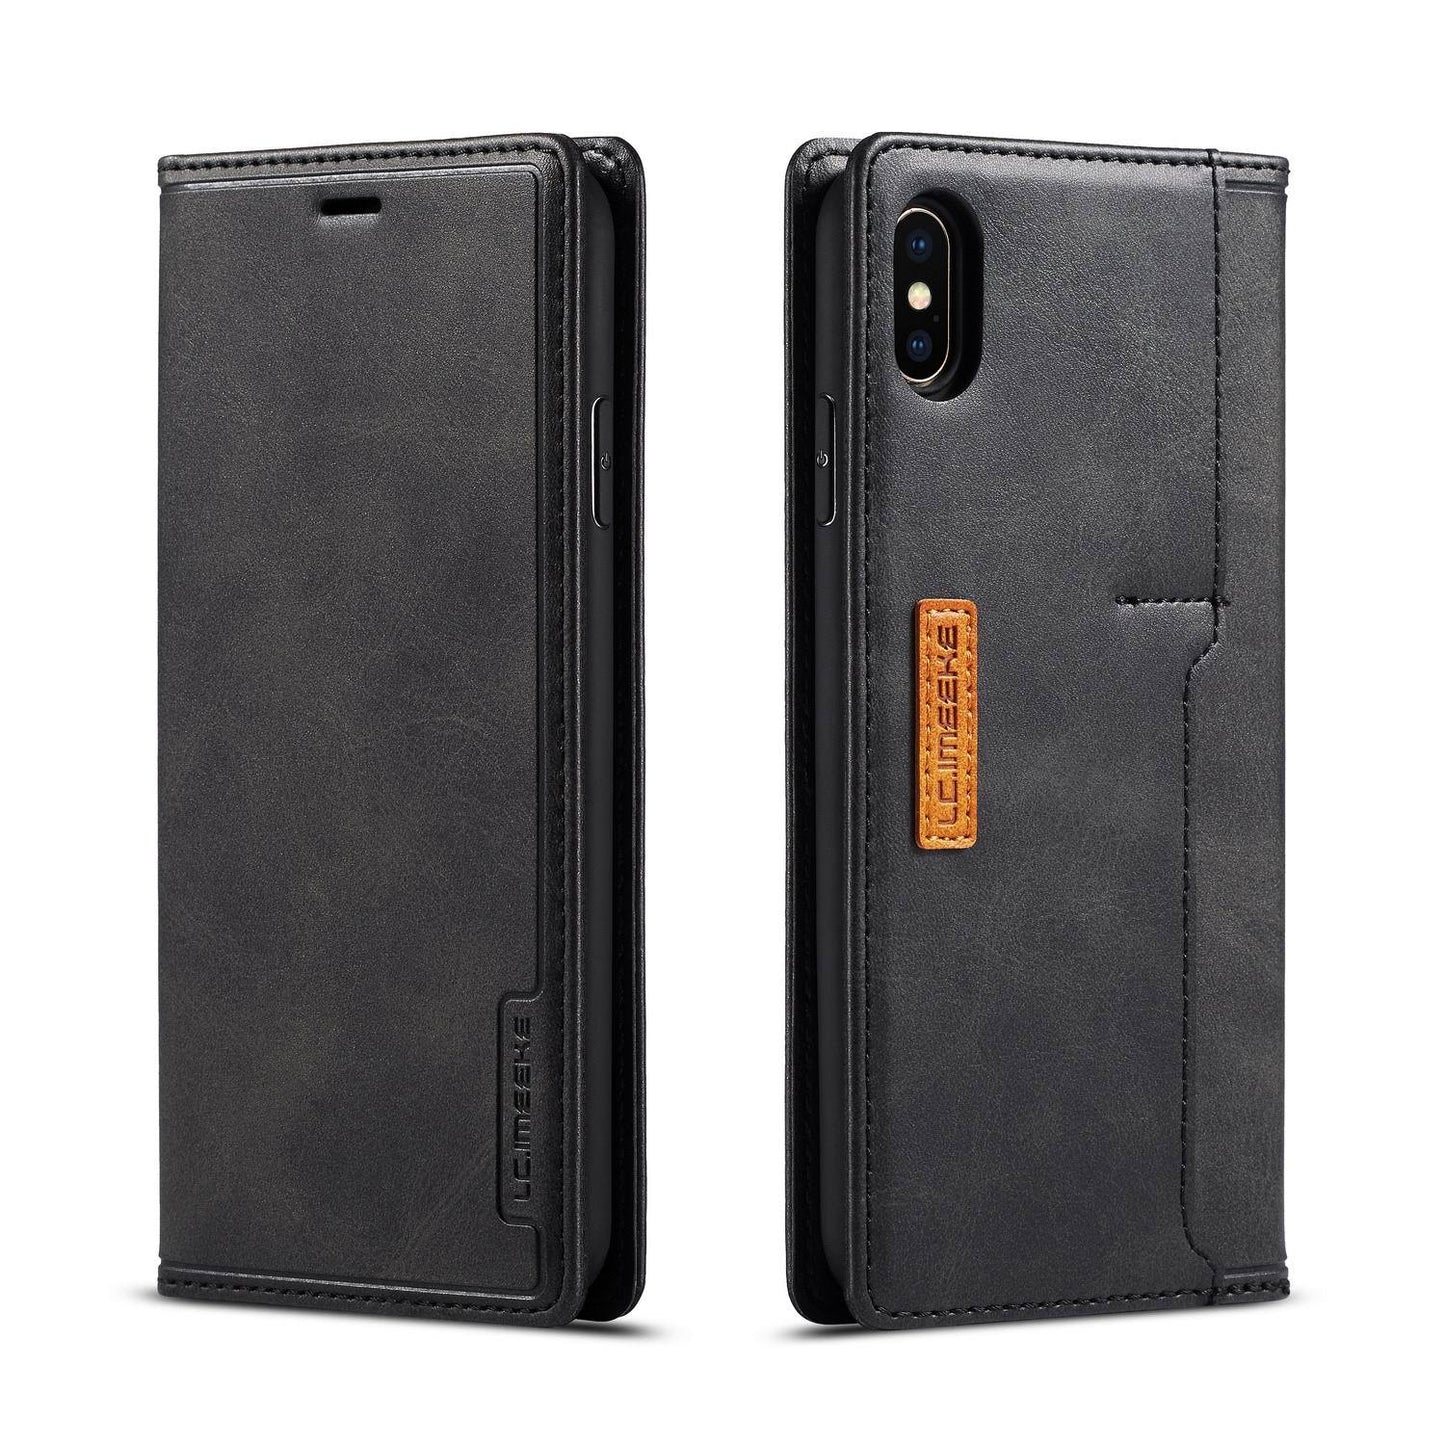 Premium flip double genuine leather phone case